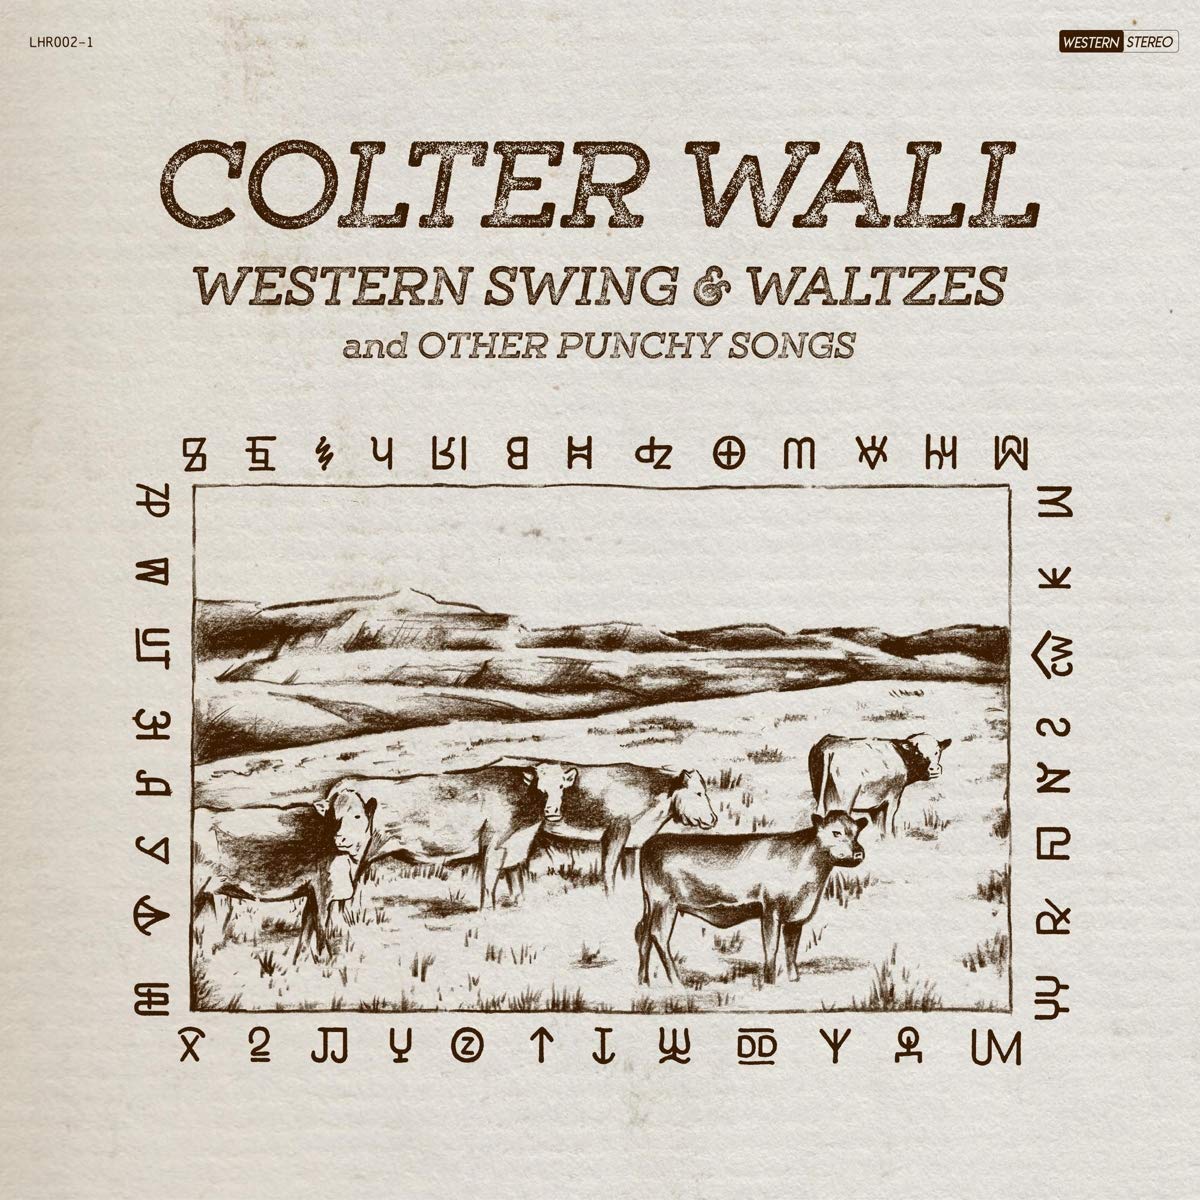 Vinile Colter Wall - Western Swing & Waltzes And Other Punchy Songs NUOVO SIGILLATO, EDIZIONE DEL 15/08/2020 SUBITO DISPONIBILE